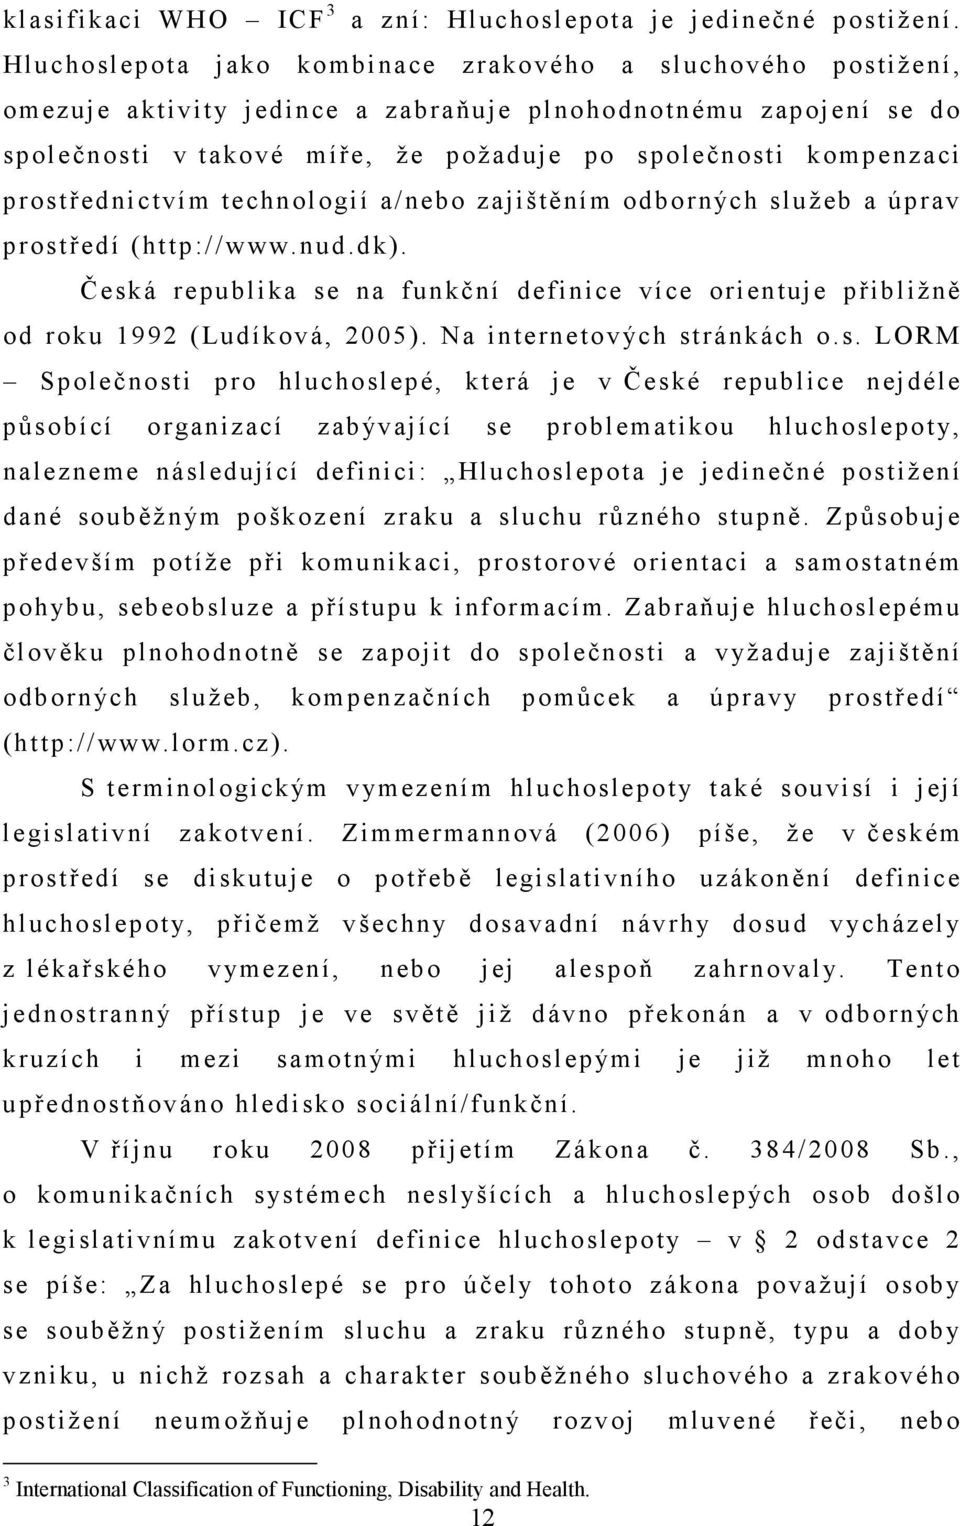 prostřednictvím technologií a/nebo zajištěním odborných služeb a úprav prostředí (http://www.nud.dk). Česká republika se na funkční definice více orientuje přibližně od roku 1992 (Ludíková, 2005).